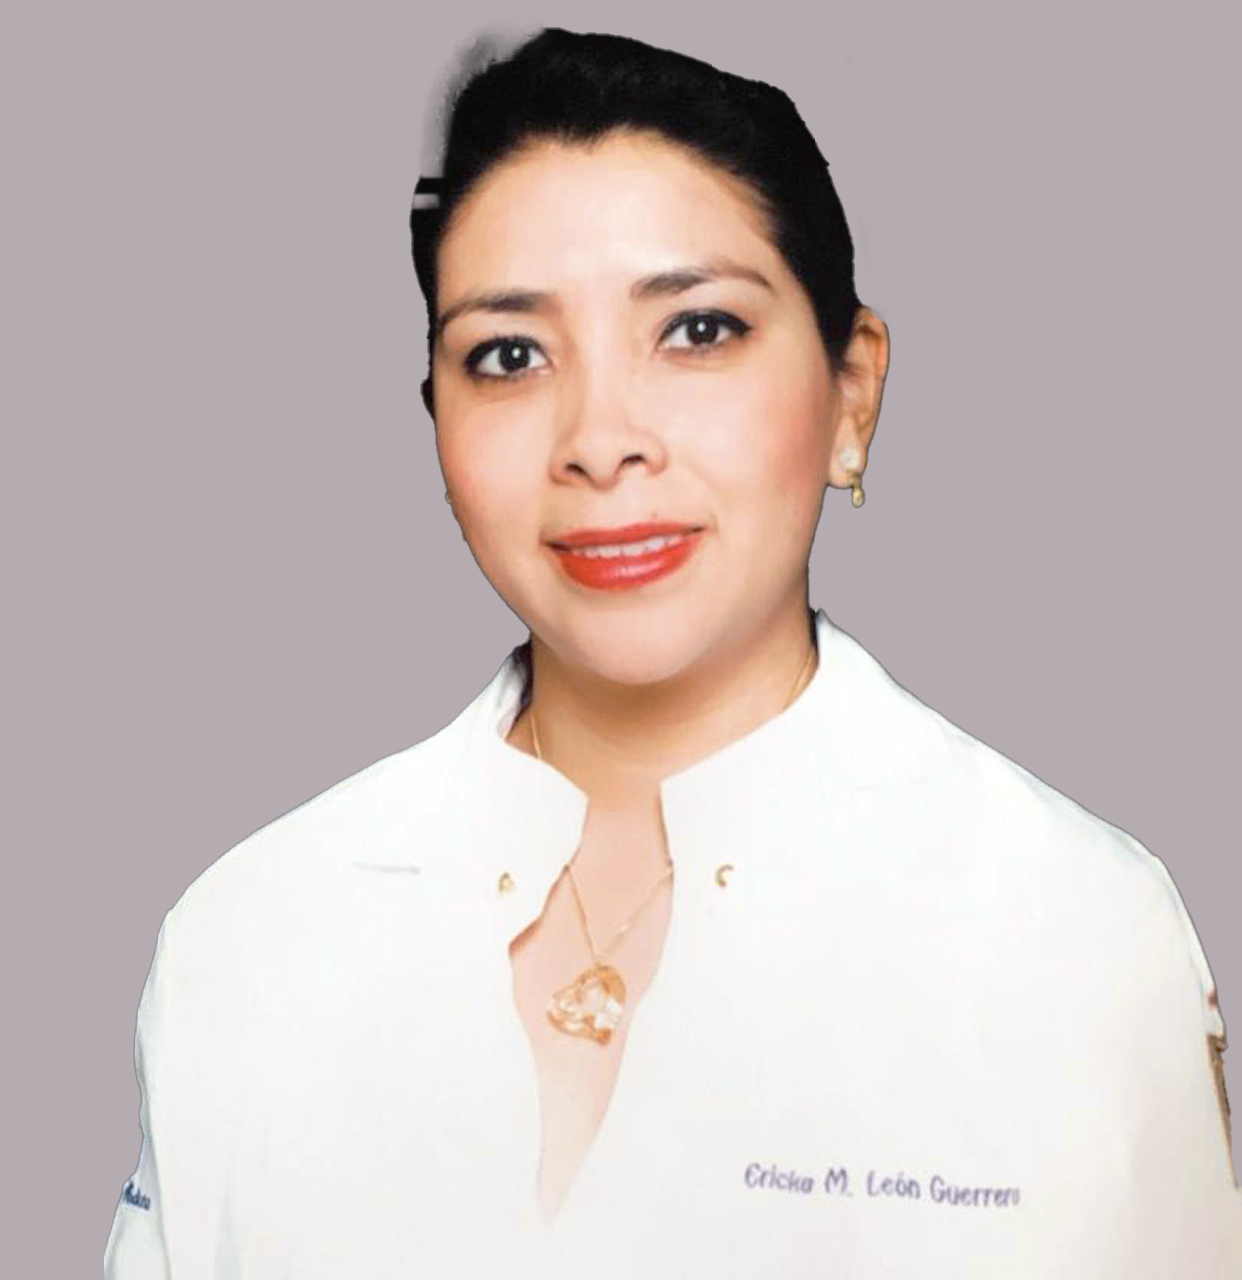 Dra. Ericka León